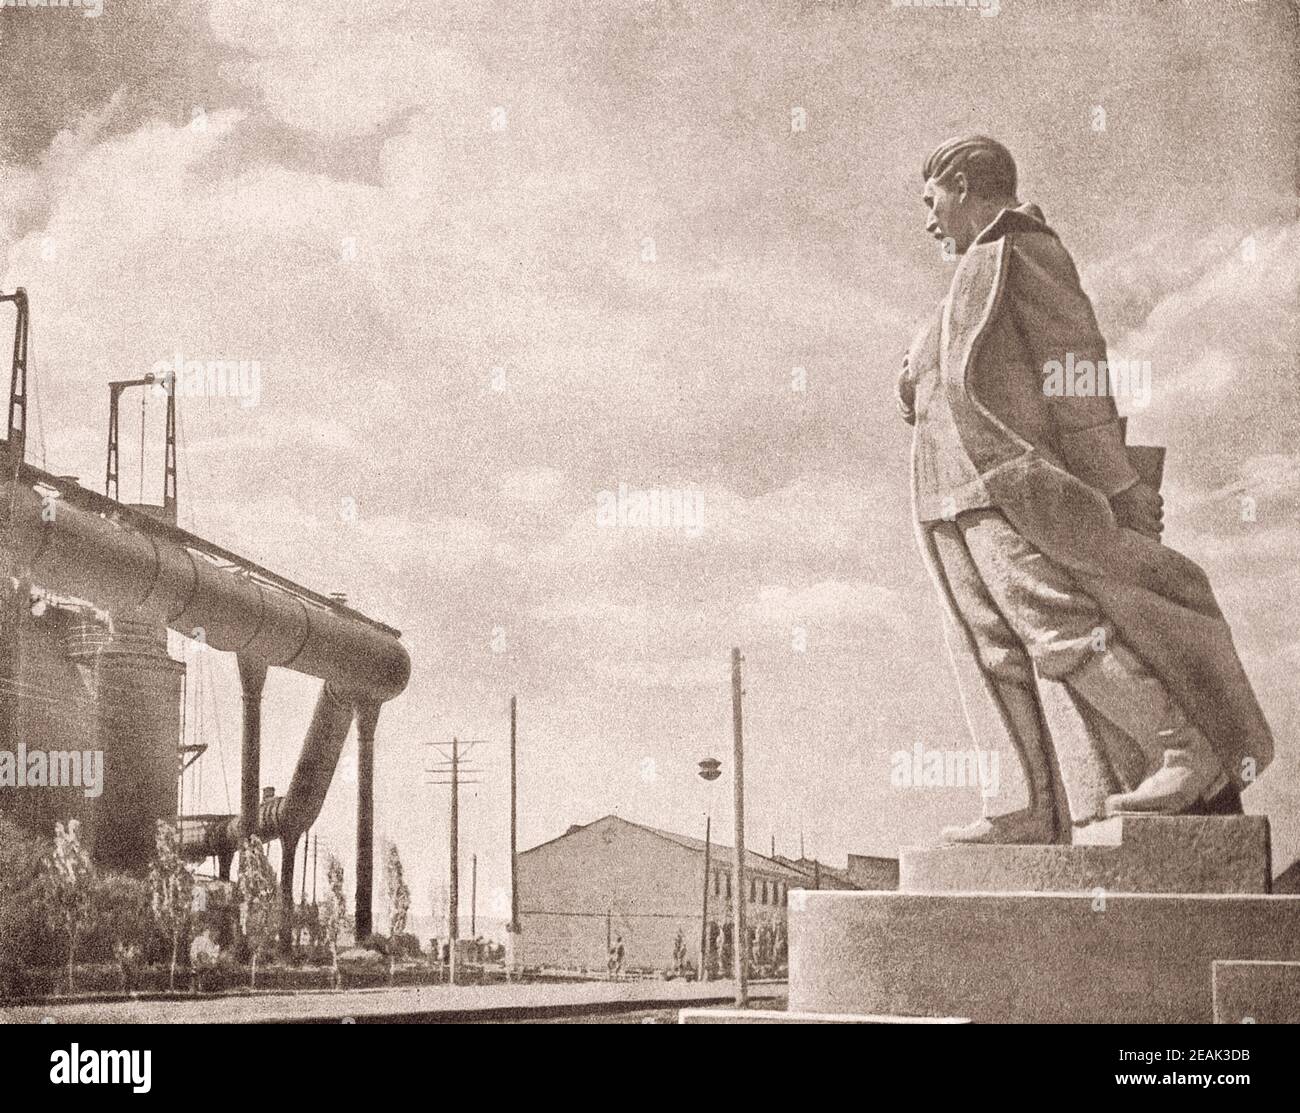 Armée Rouge. Du livre de propagande soviétique de 1937. Monument à Staline sur le fond d'une entreprise industrielle. Banque D'Images